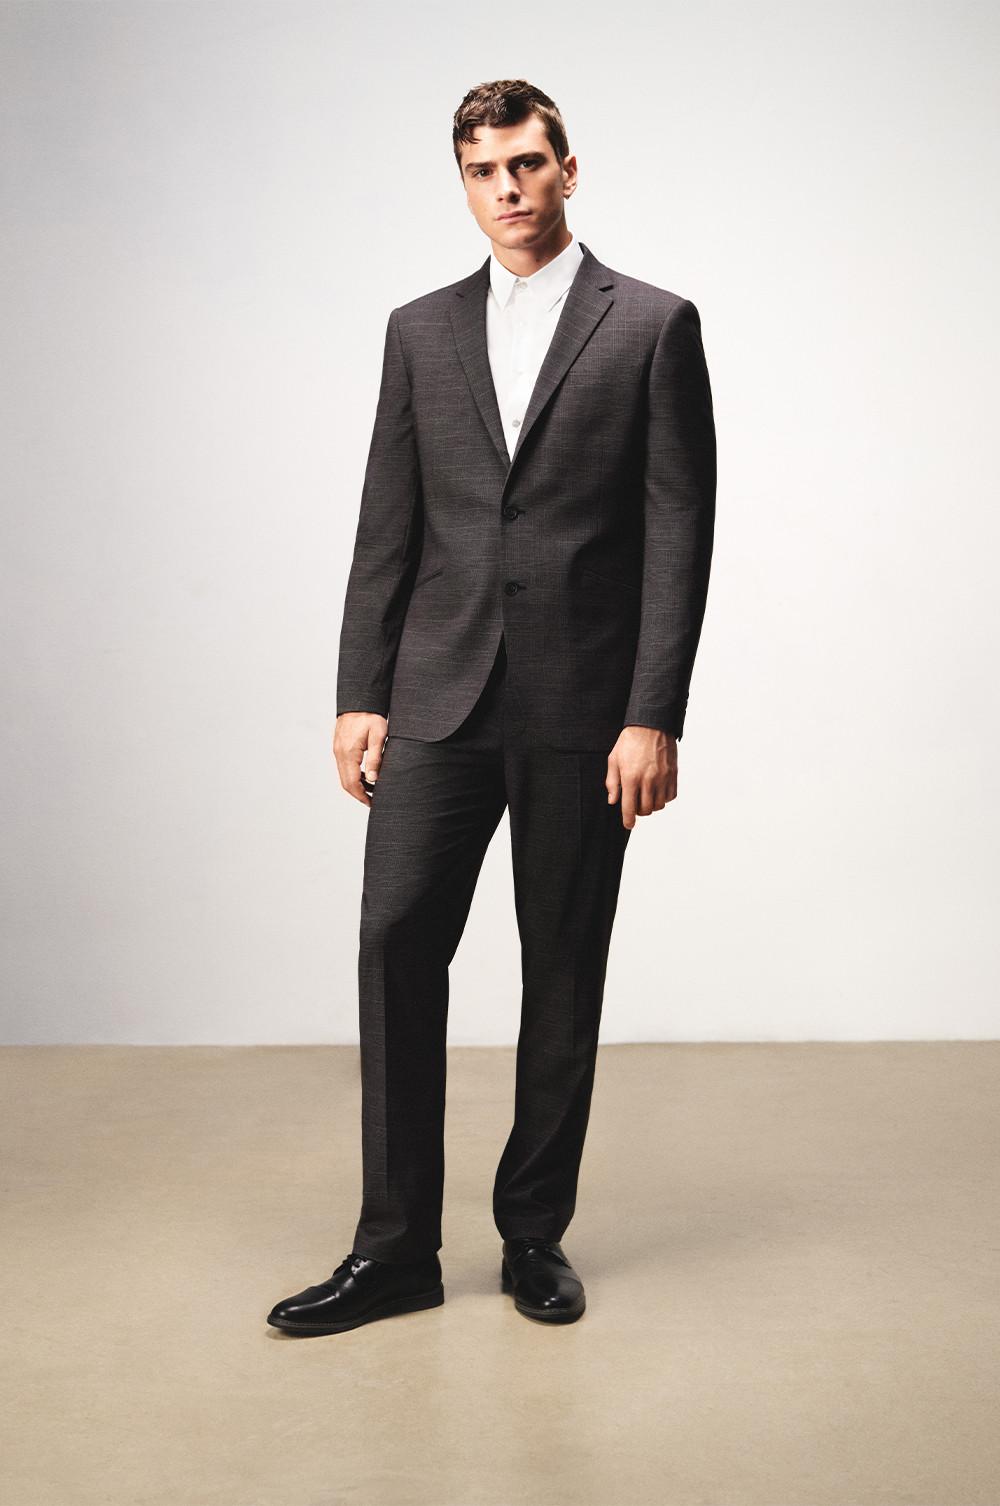 Hubert Hudson Igualmente energía Prendas formales masculinas indispensables: trajes, camisas y ropa de noche  | Primark